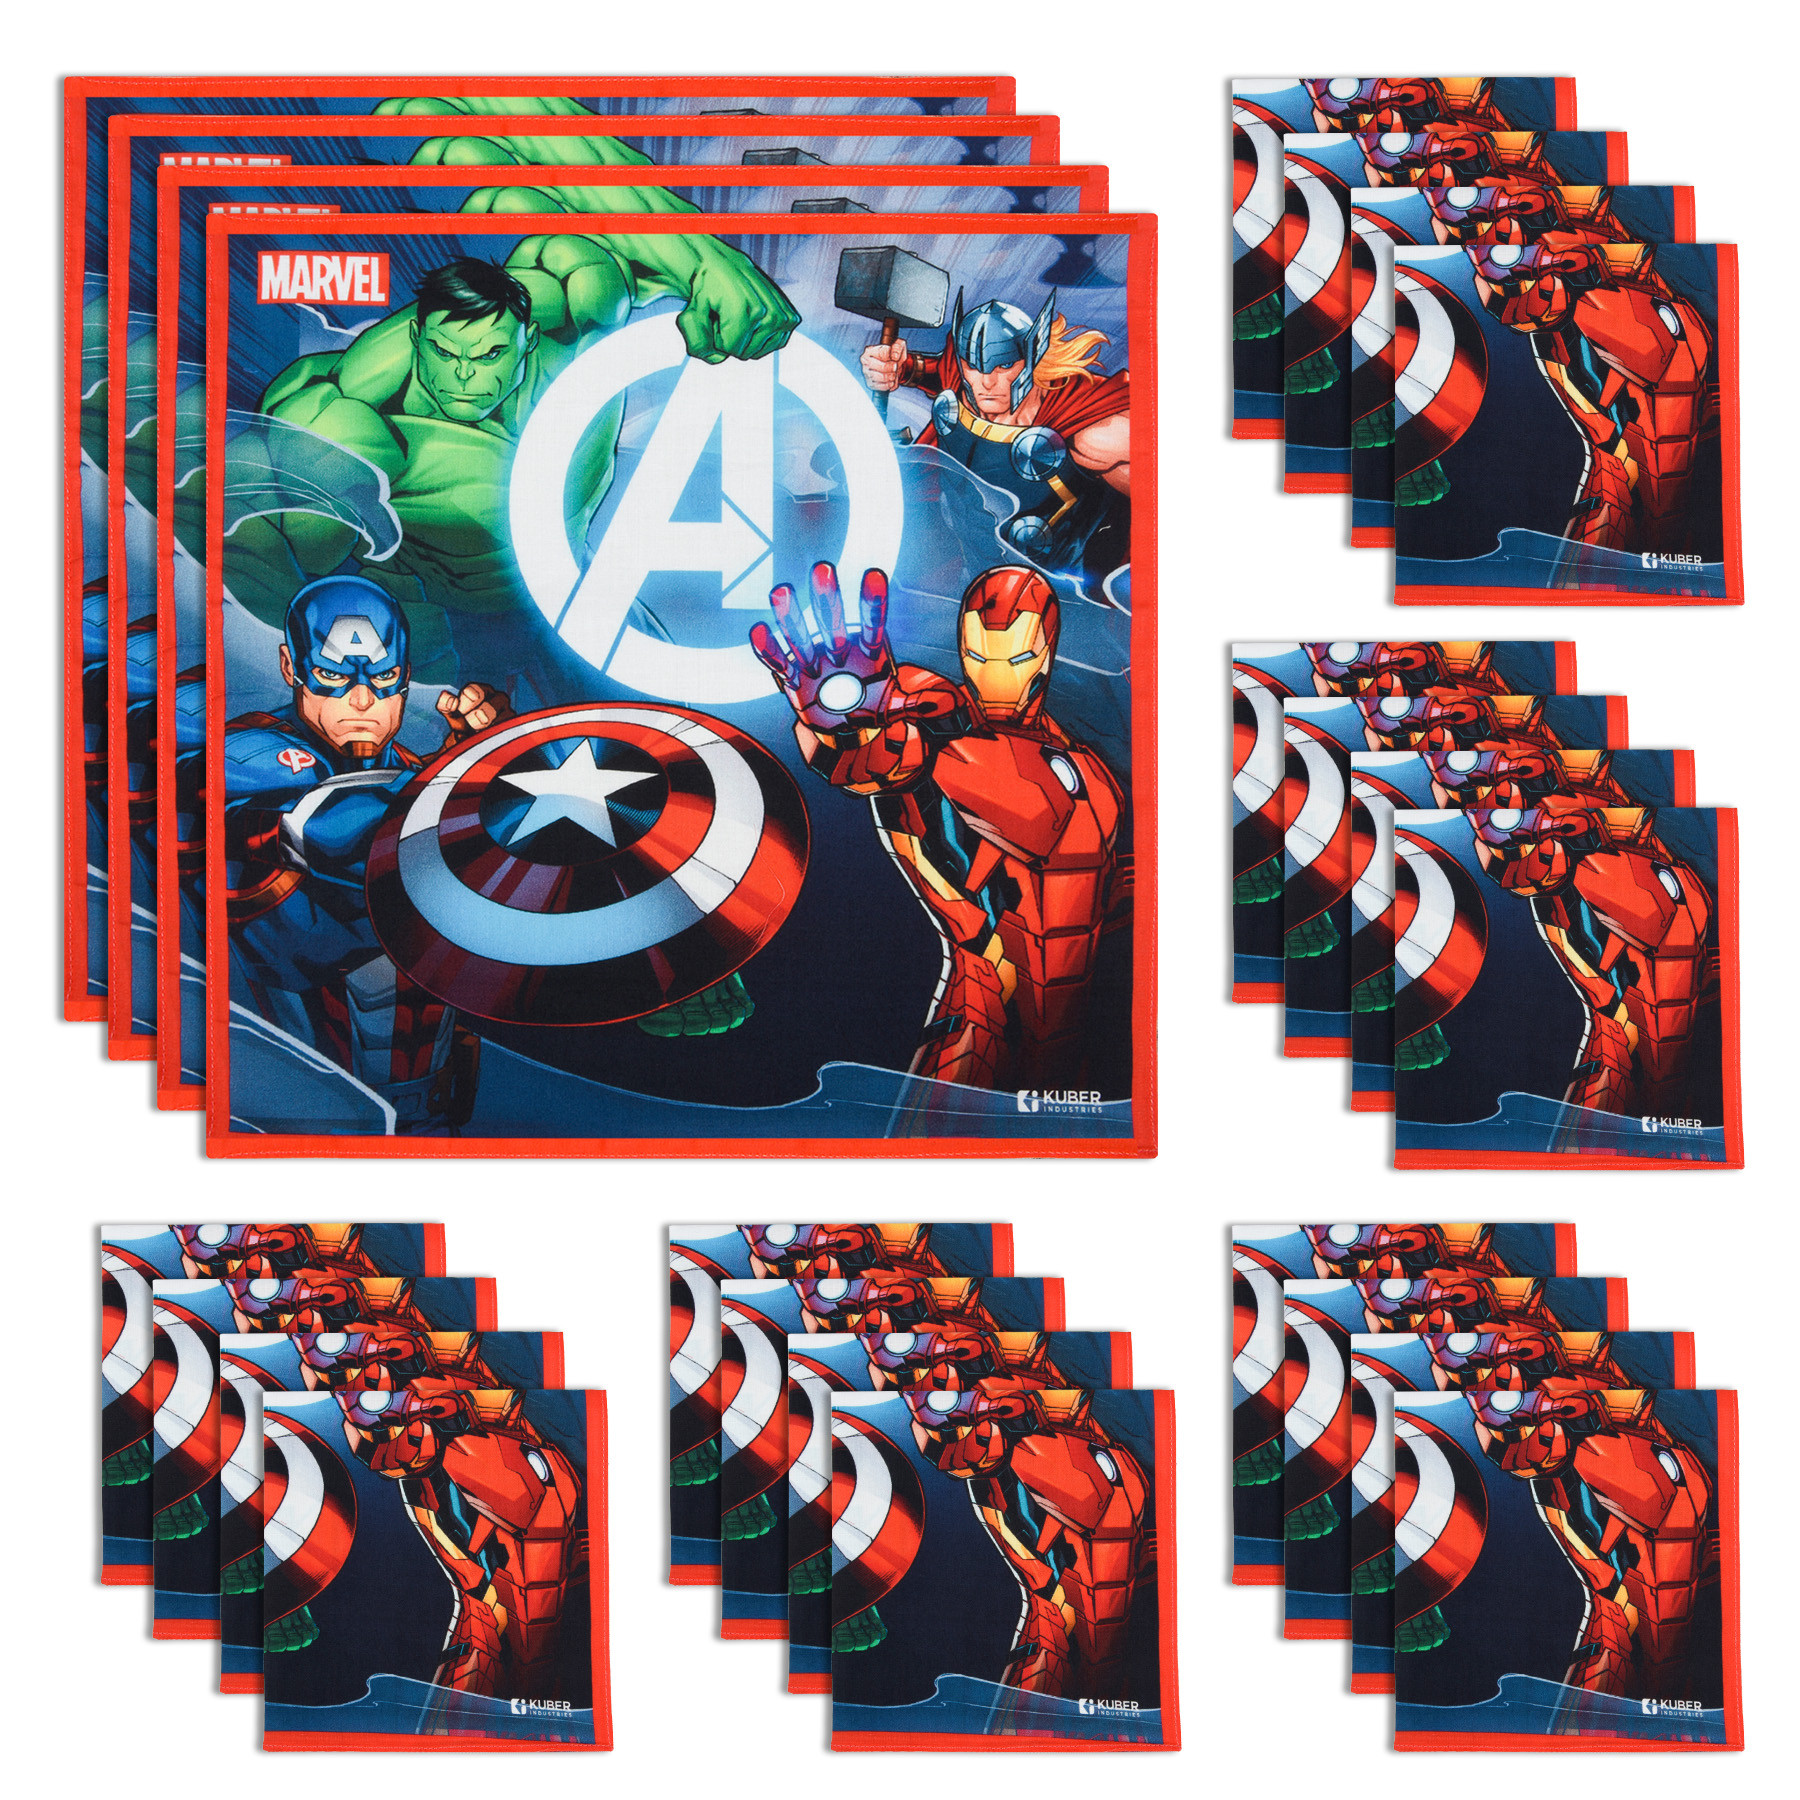 Kuber Industries Marvel Avenger Team Handkerchiefs | Cotton Handkerchiefs for Boys | Handkerchiefs for Girls | Rumal for Boys & Girls | Hankies for Gifting |Multicolor